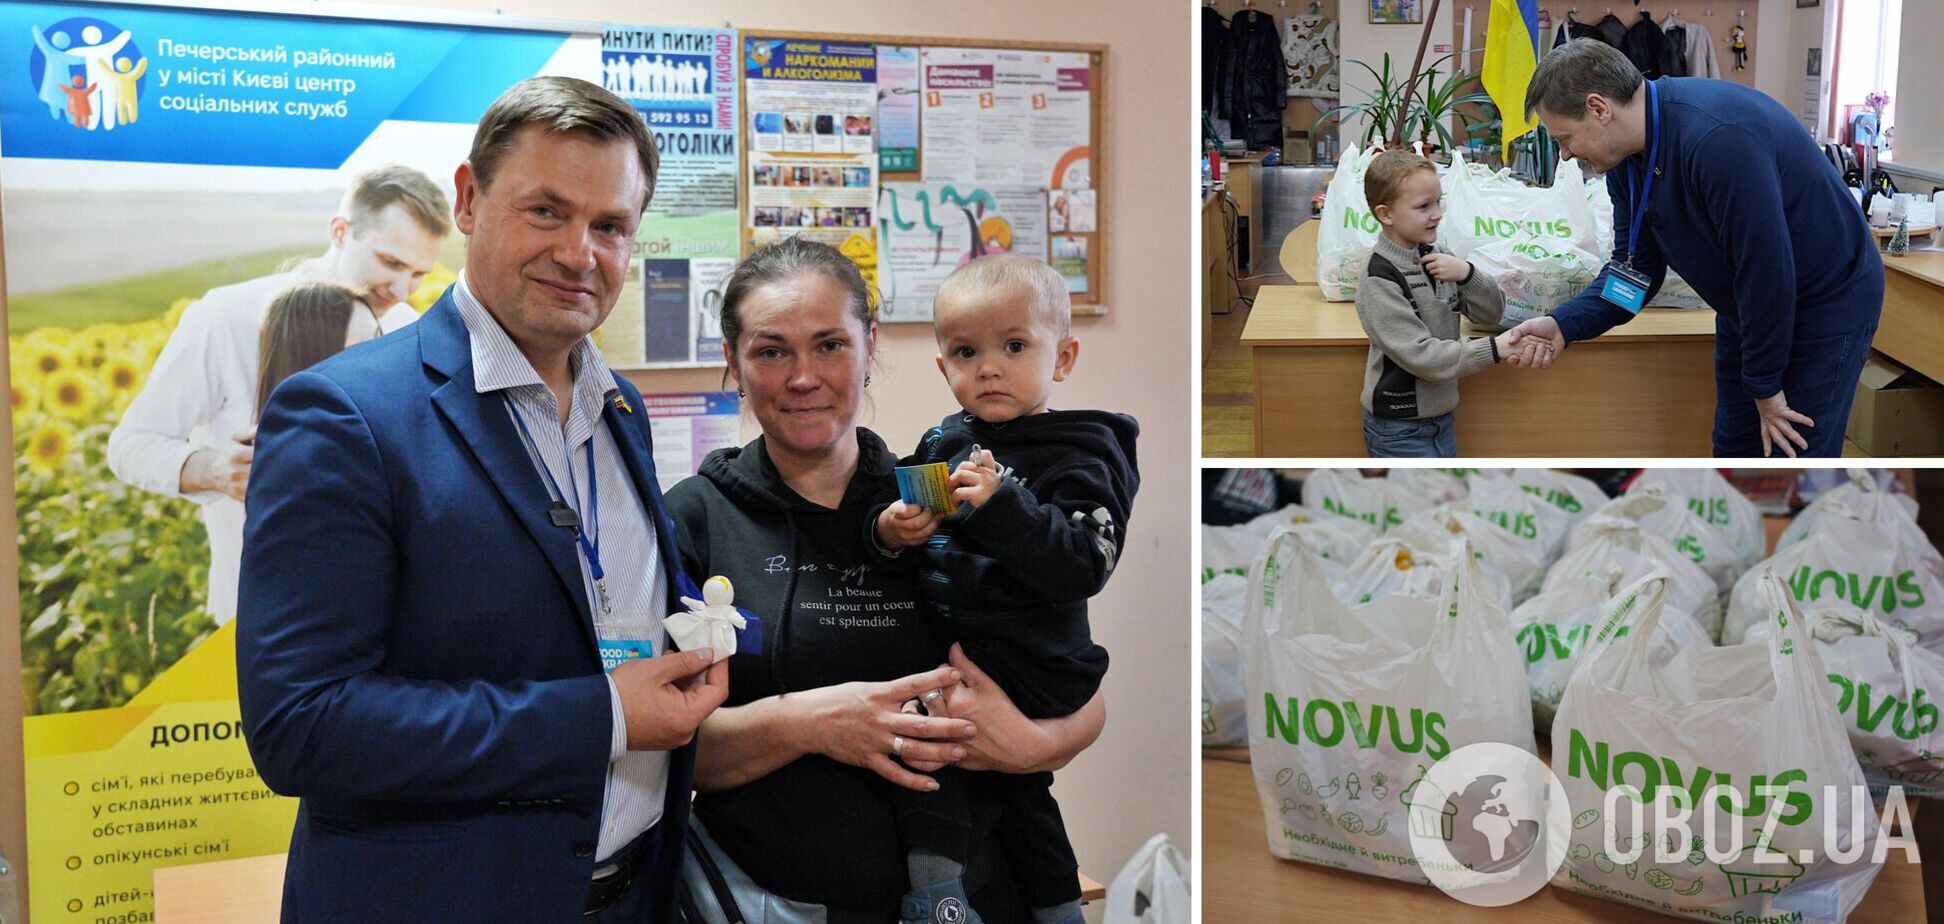 Надія у кожному пакунку: як небайдужість фонду Food for Ukraine переросла у добрі справи